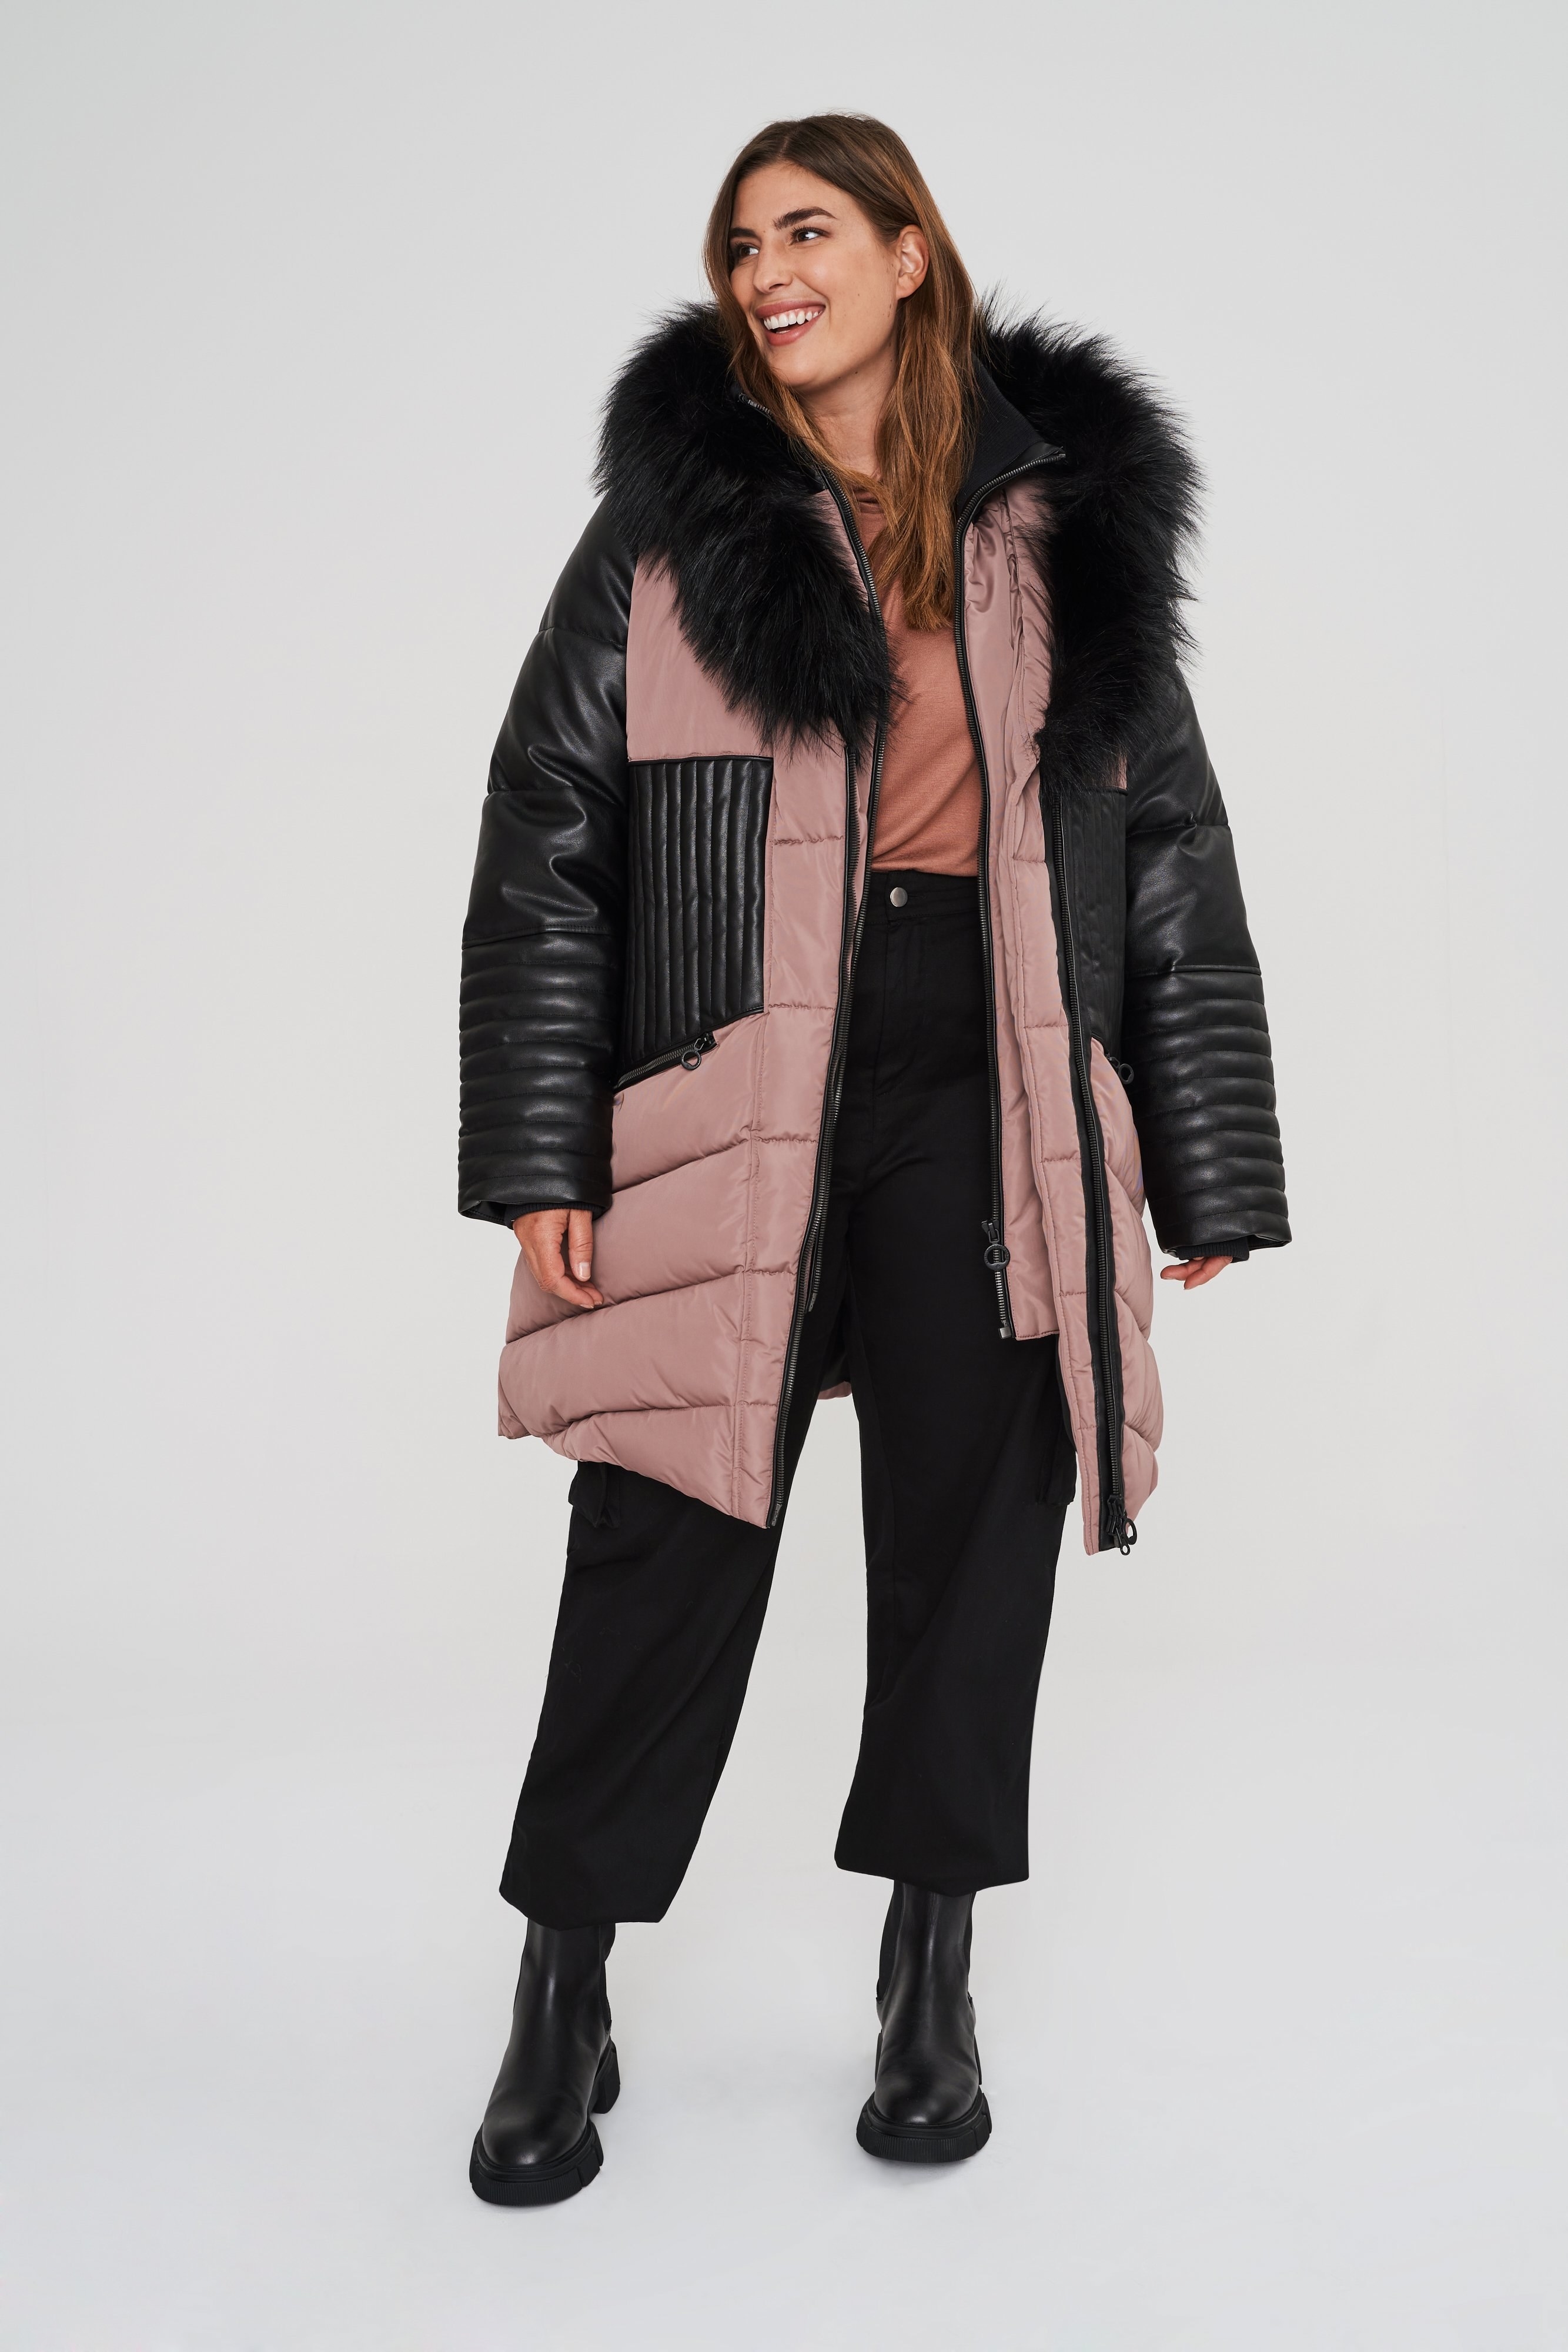 model in puffer faux-fur coat